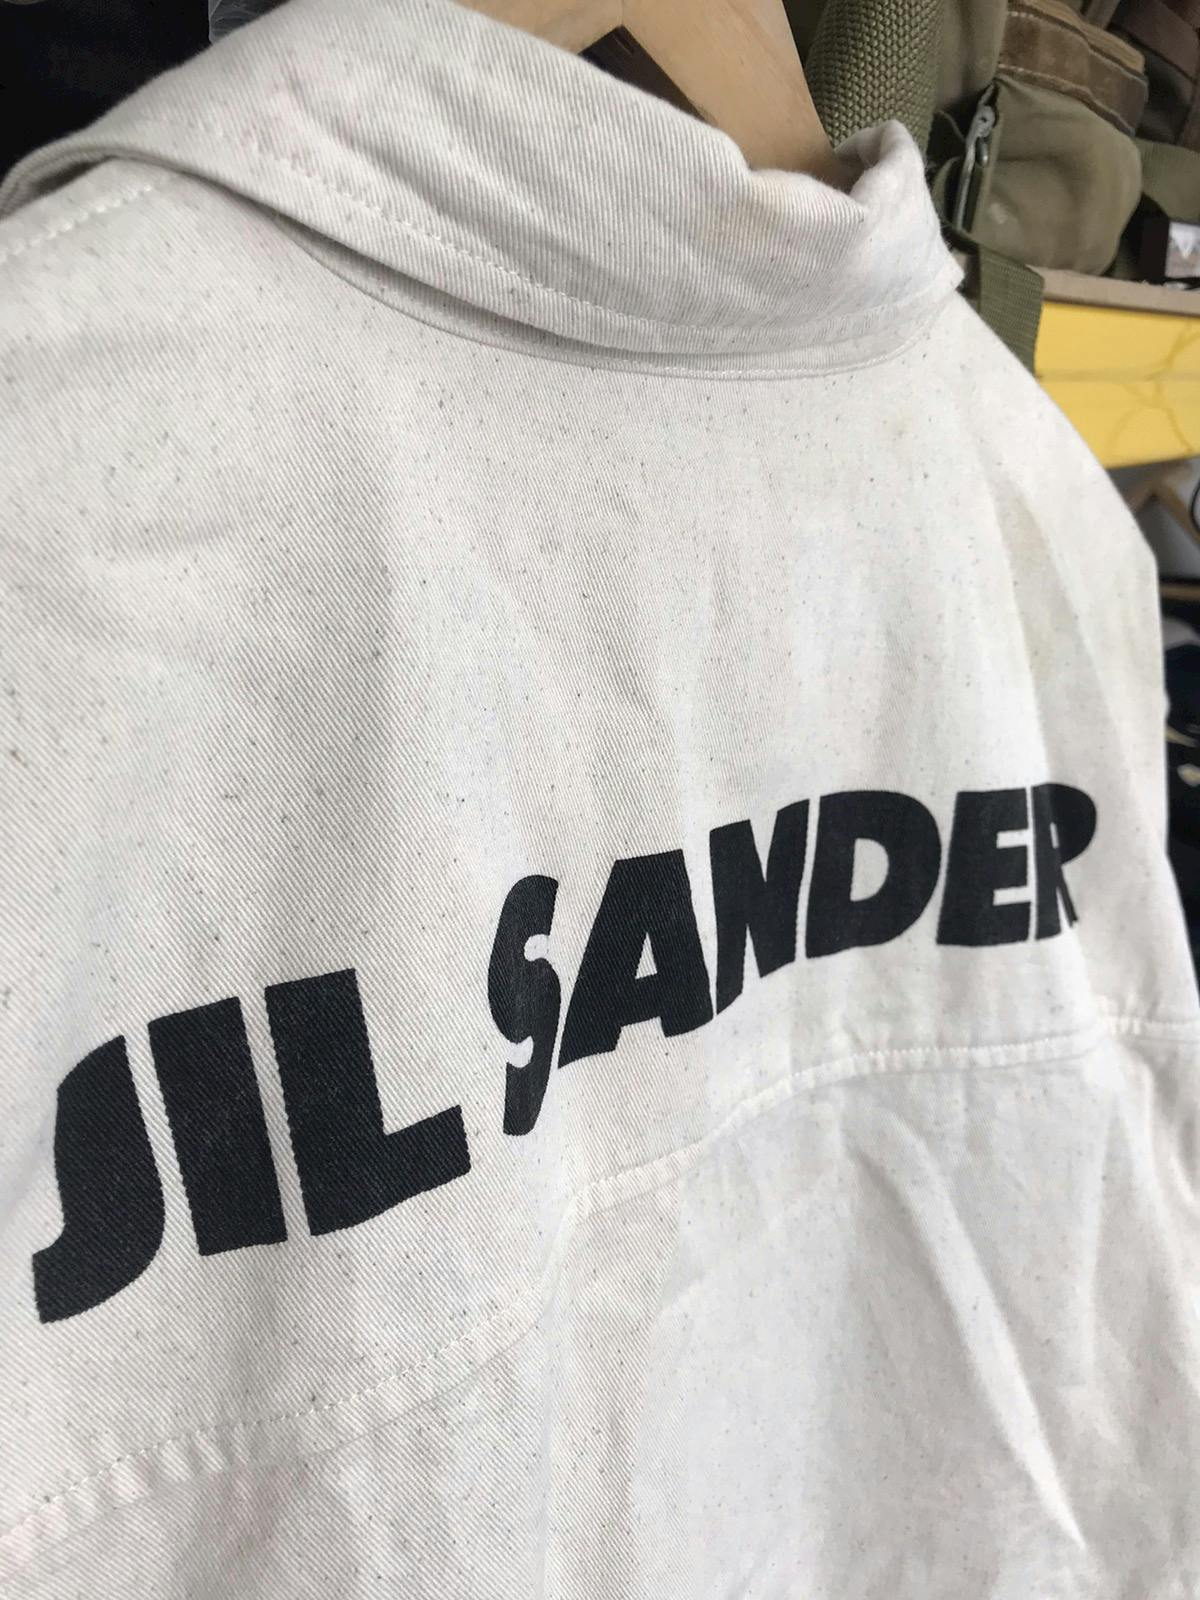 Vintage Jill Sander Spellout Shirt - 4